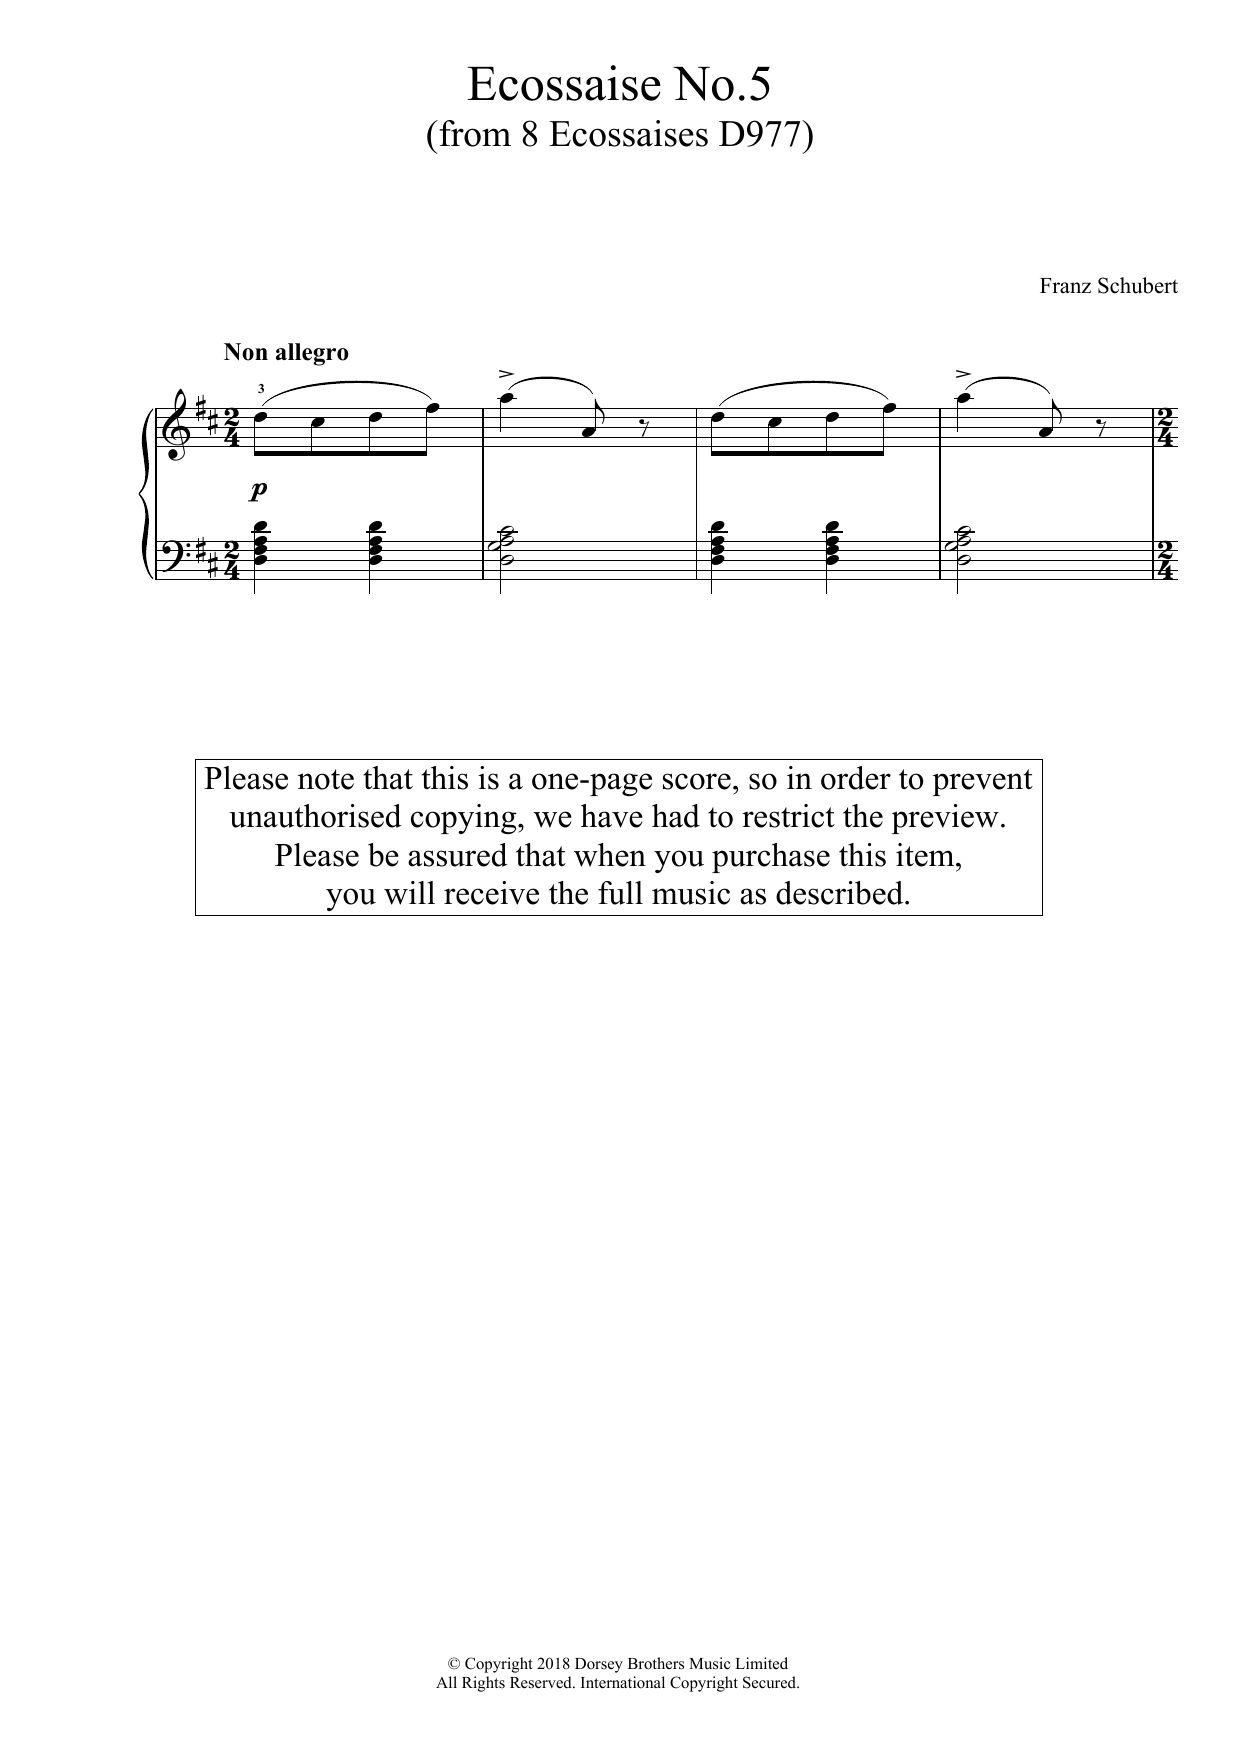 Download Franz Schubert Ecossaise No. 5 (from 8 Ecossaises D977 Sheet Music